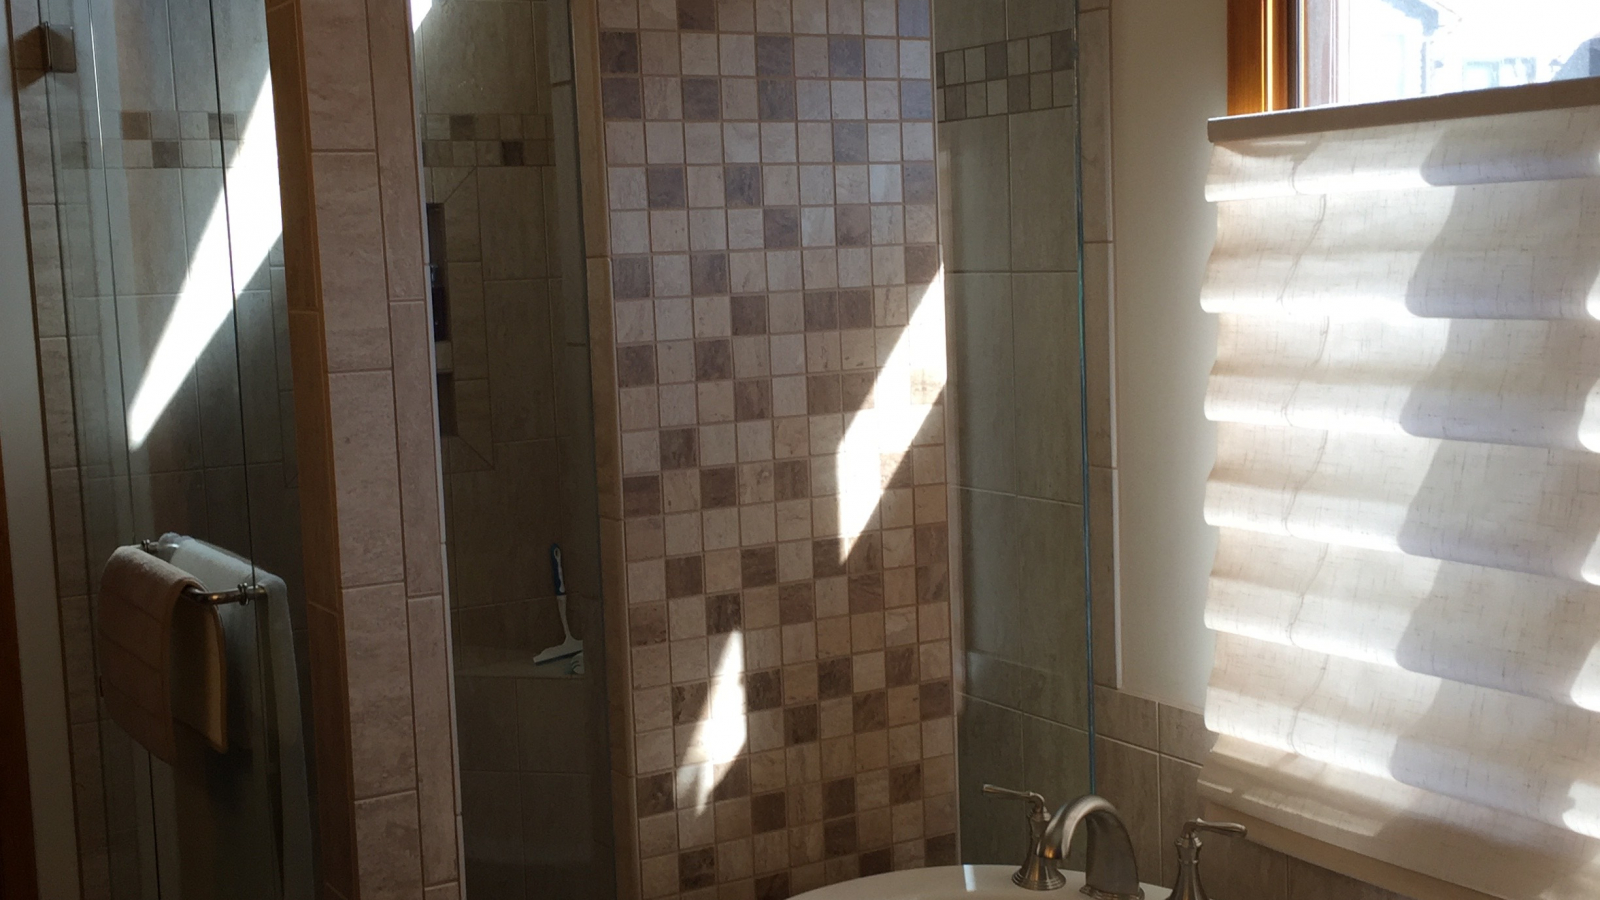 17.Tiled Shower-squashed